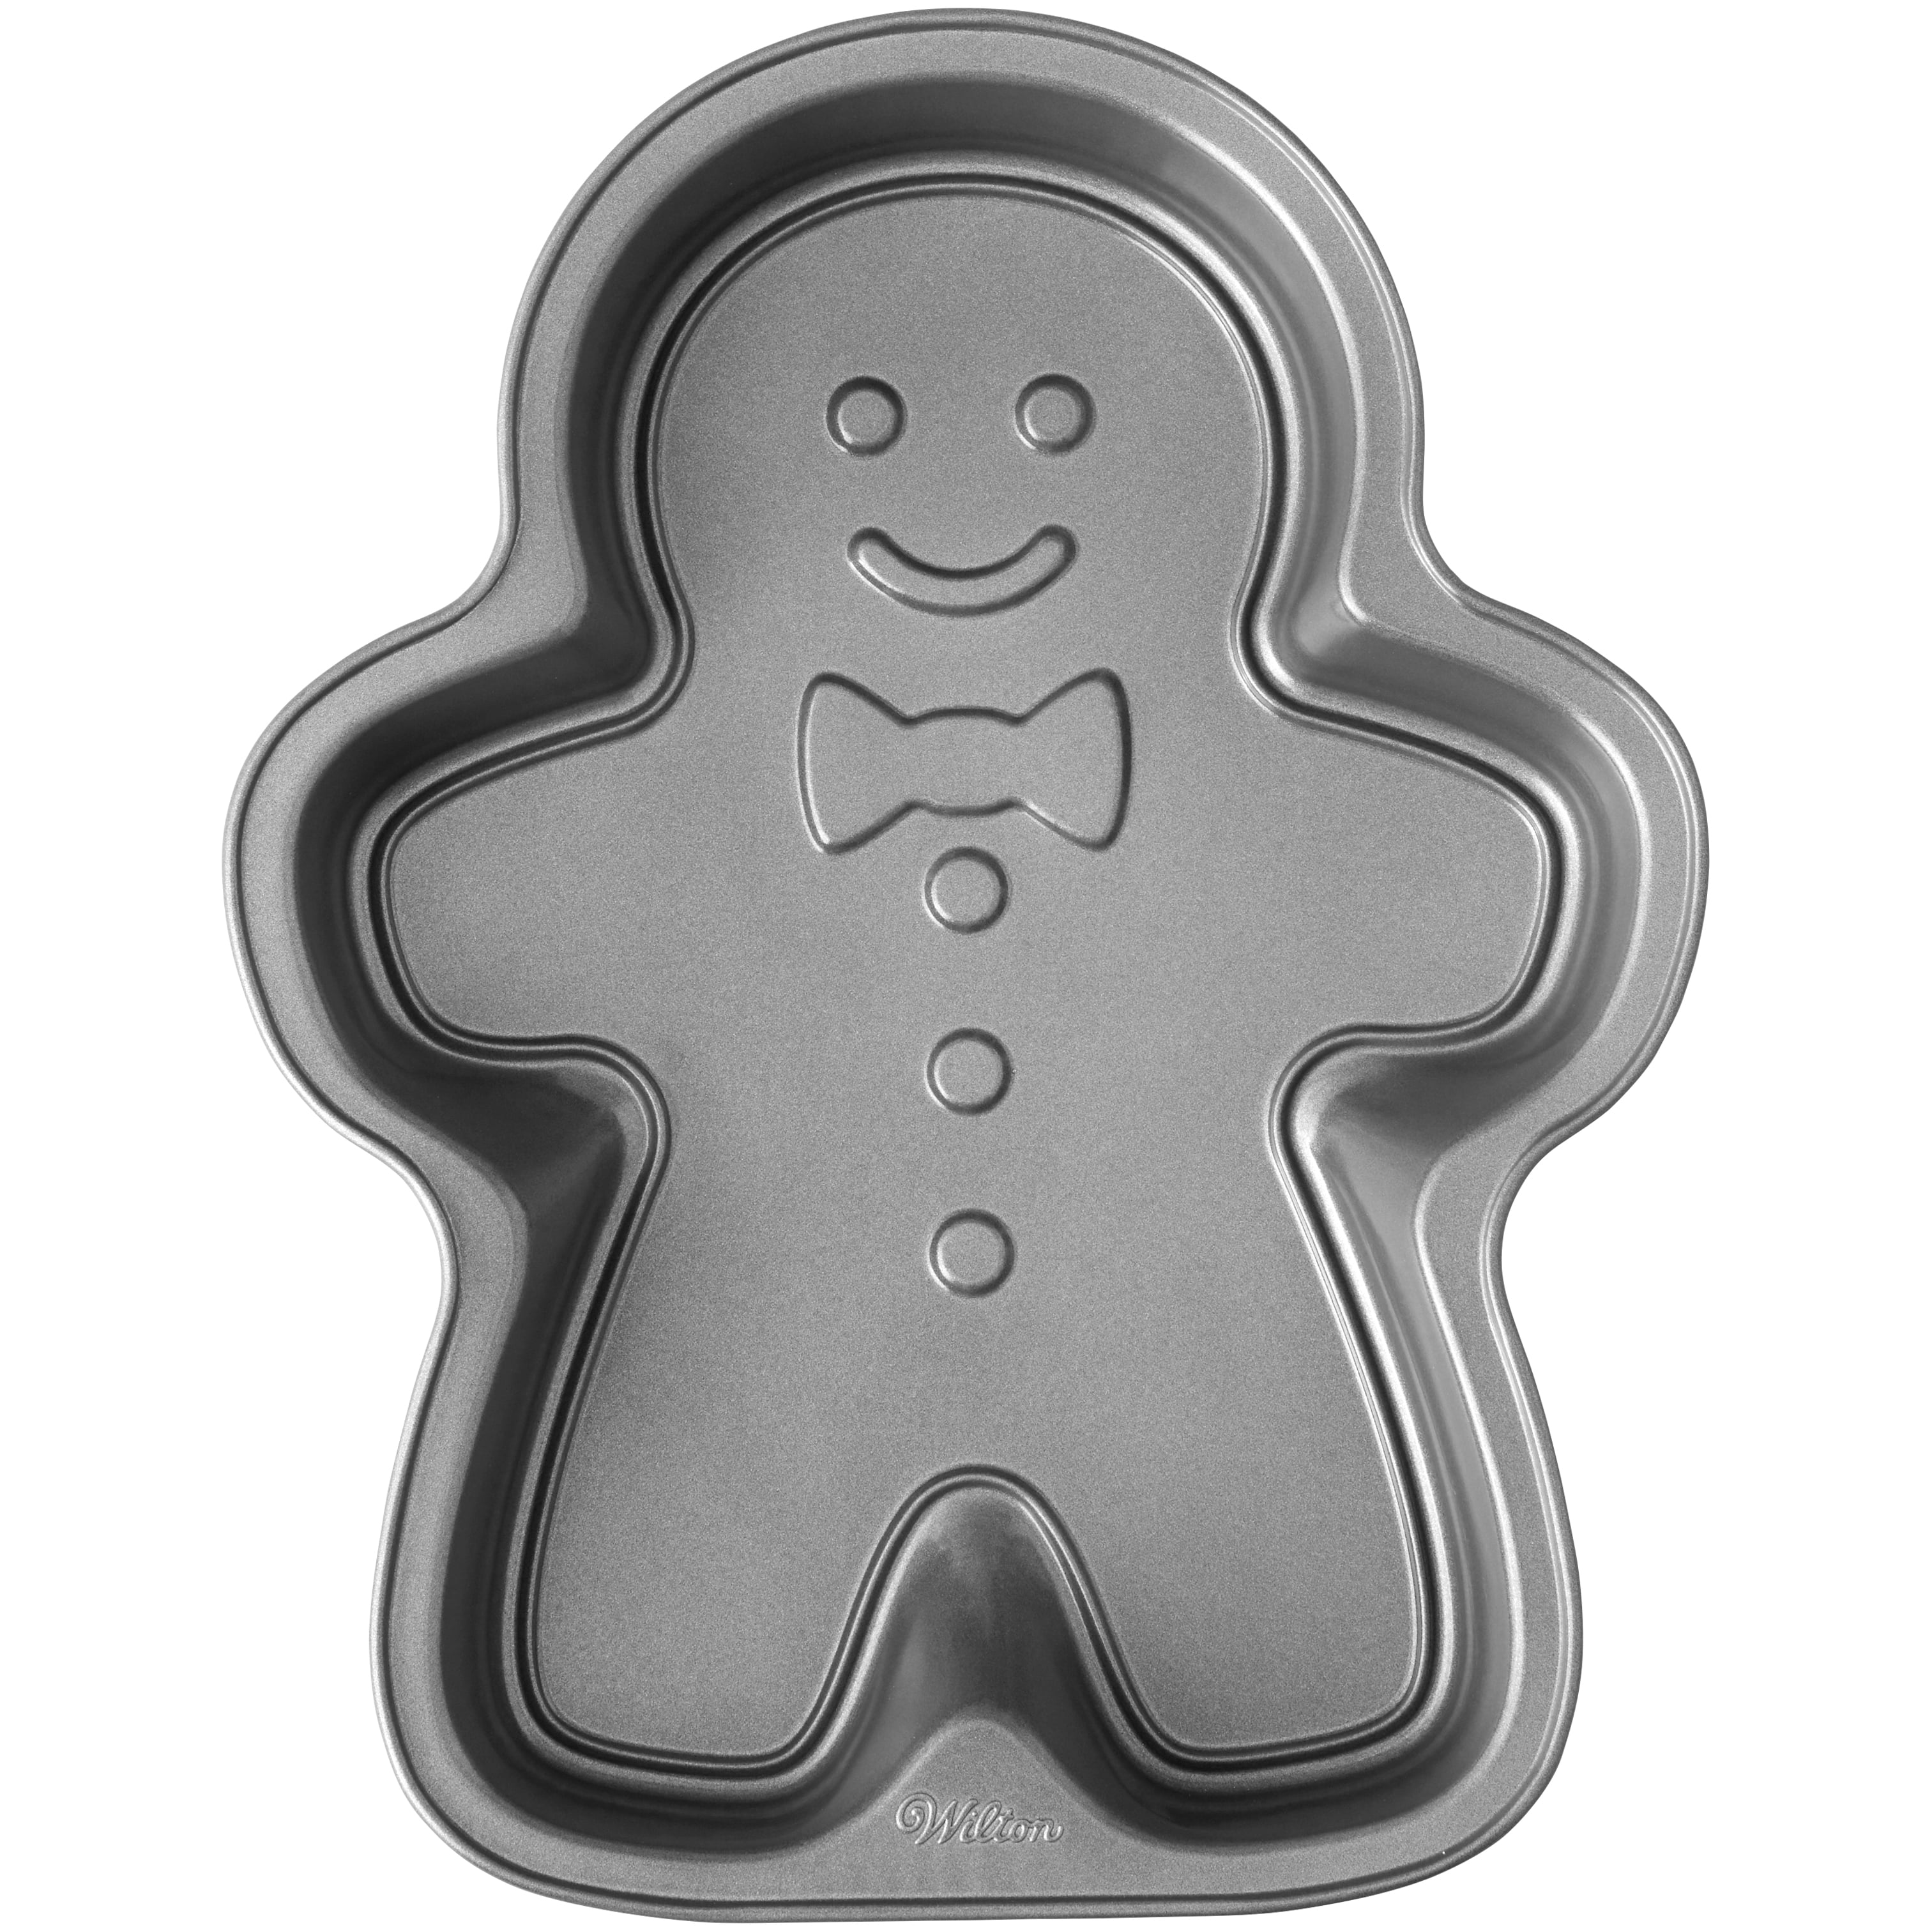 Wilton Gingerbread Boy Aluminum Non-Stick Cake Pan – 2105-8821